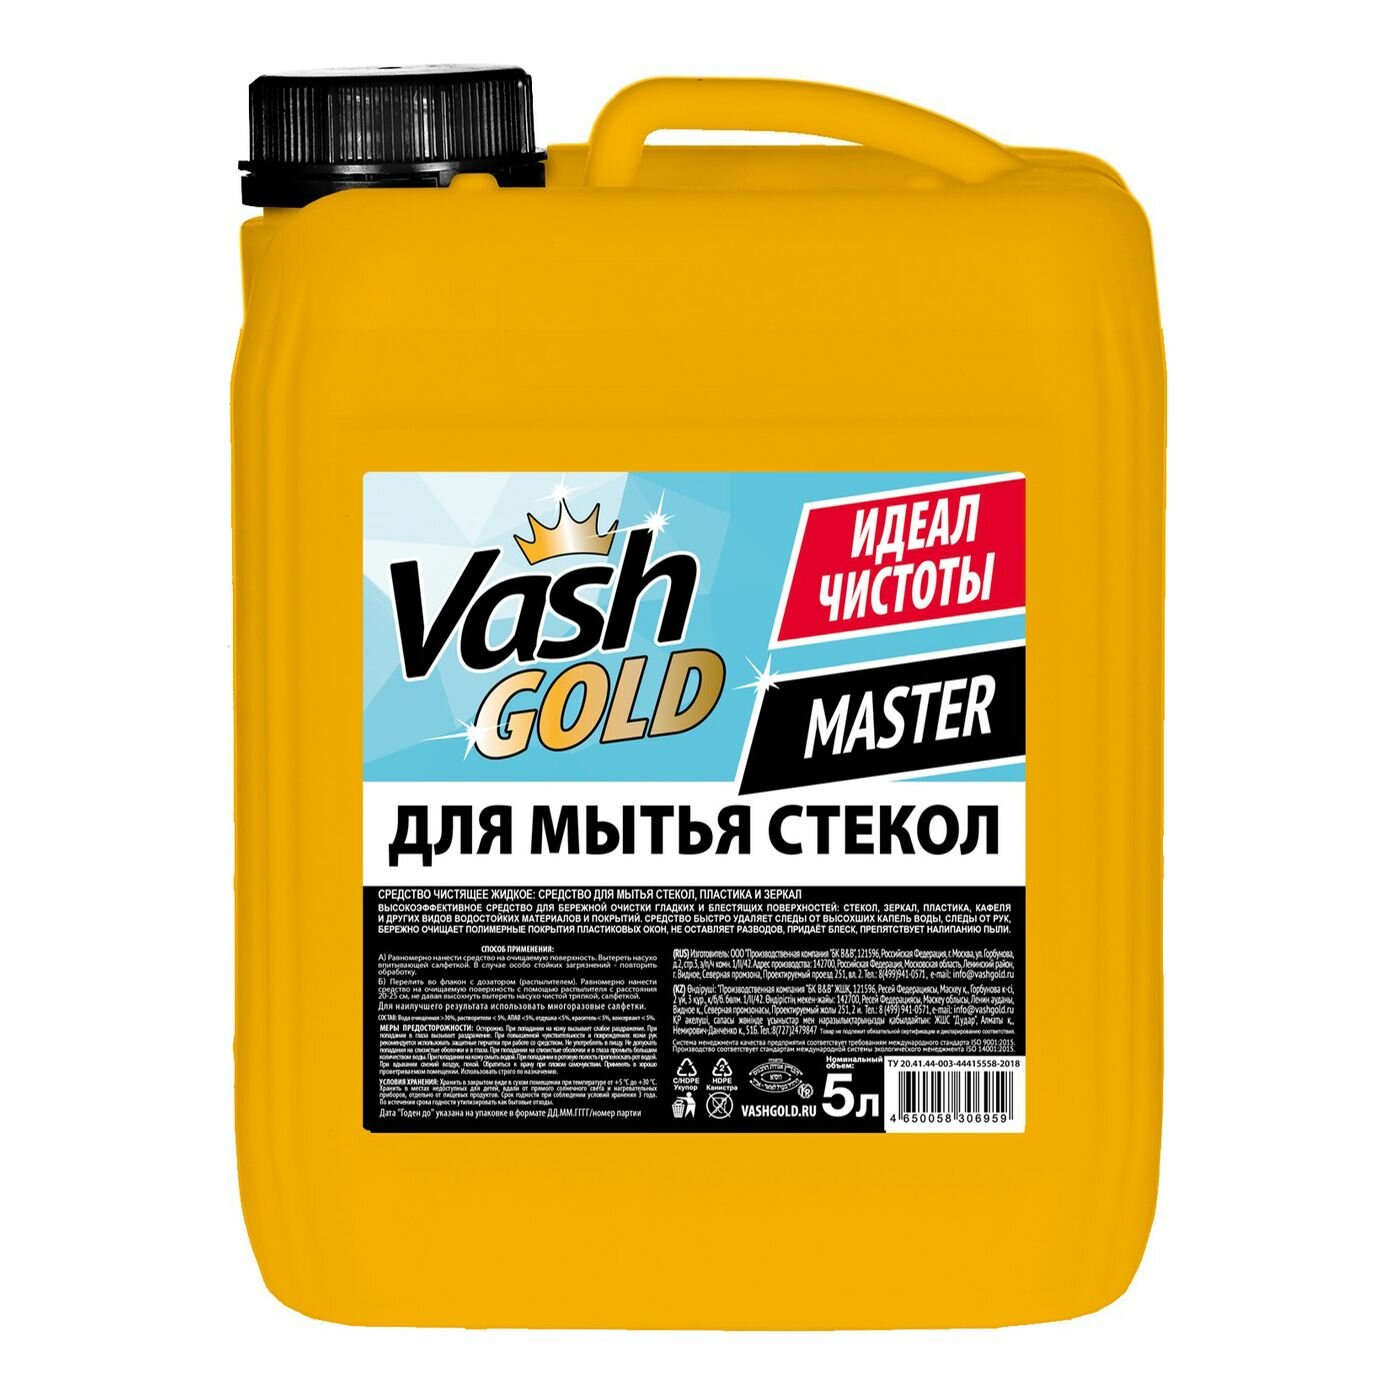 Жидкость Vash Gold Master для мытья стекол и зеркал 5 л